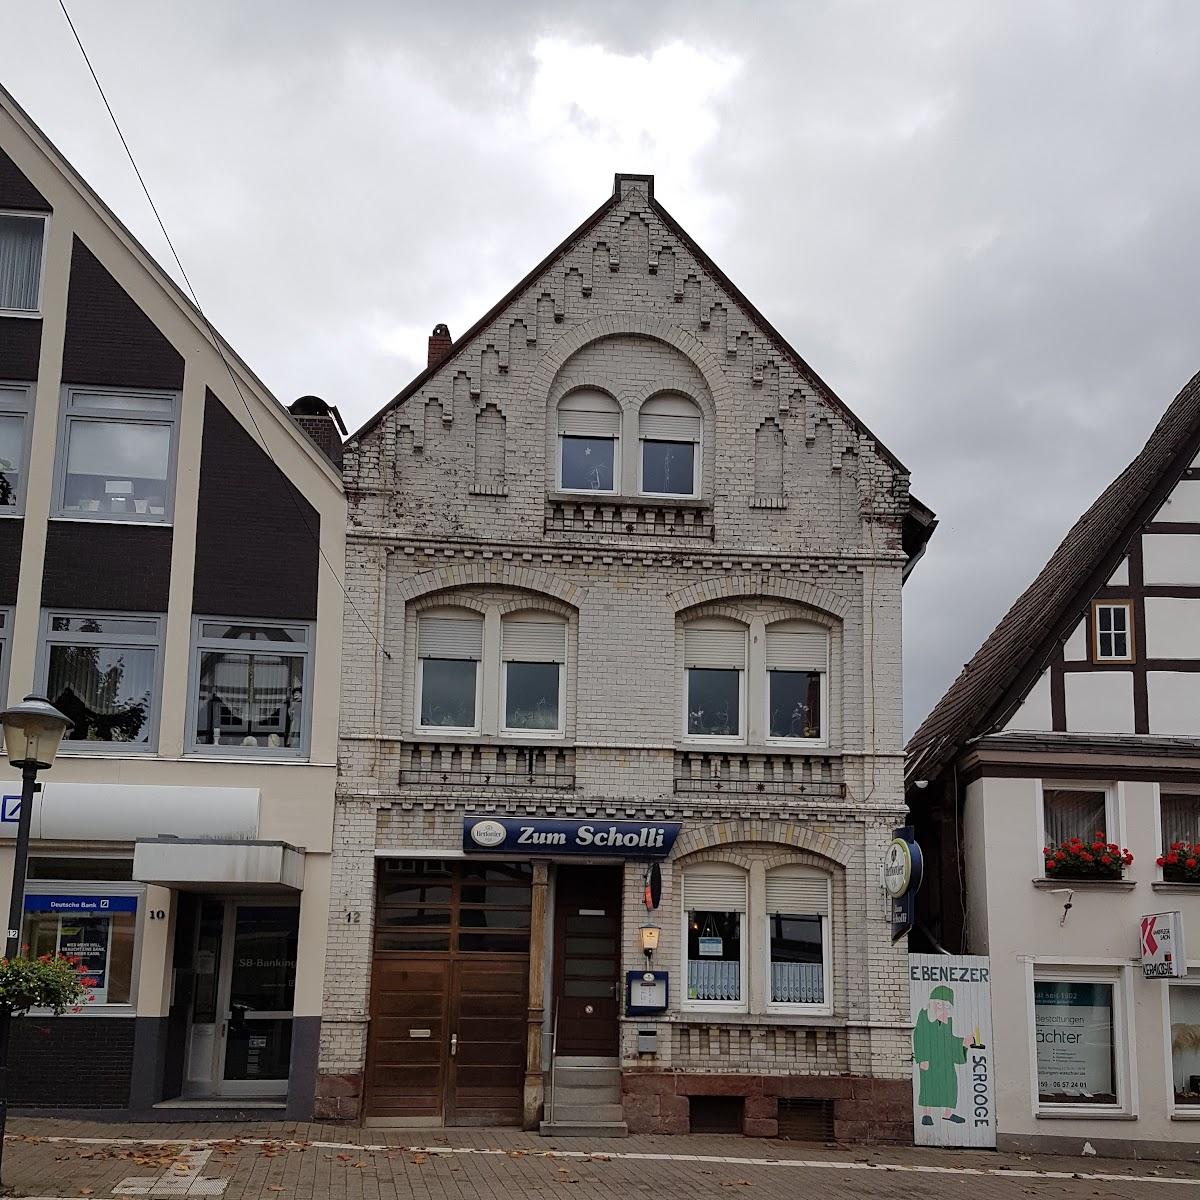 Restaurant "Zum Scholli" in Blomberg